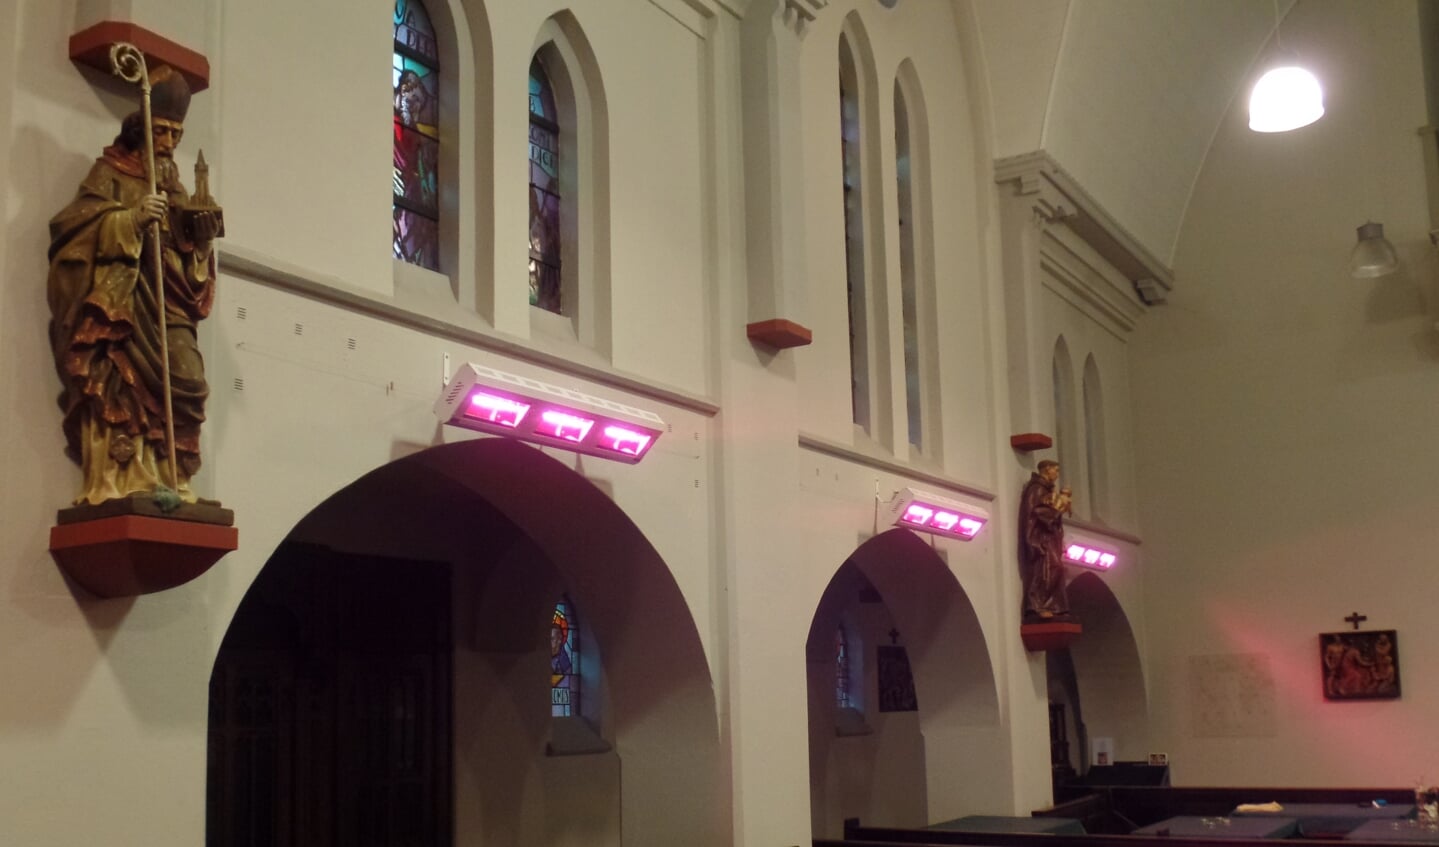 Het middenschip waar de kerkgangers zitten telt in totaal negen armaturen voor de infrarood verwarming, Foto: Jan Hendriksen.